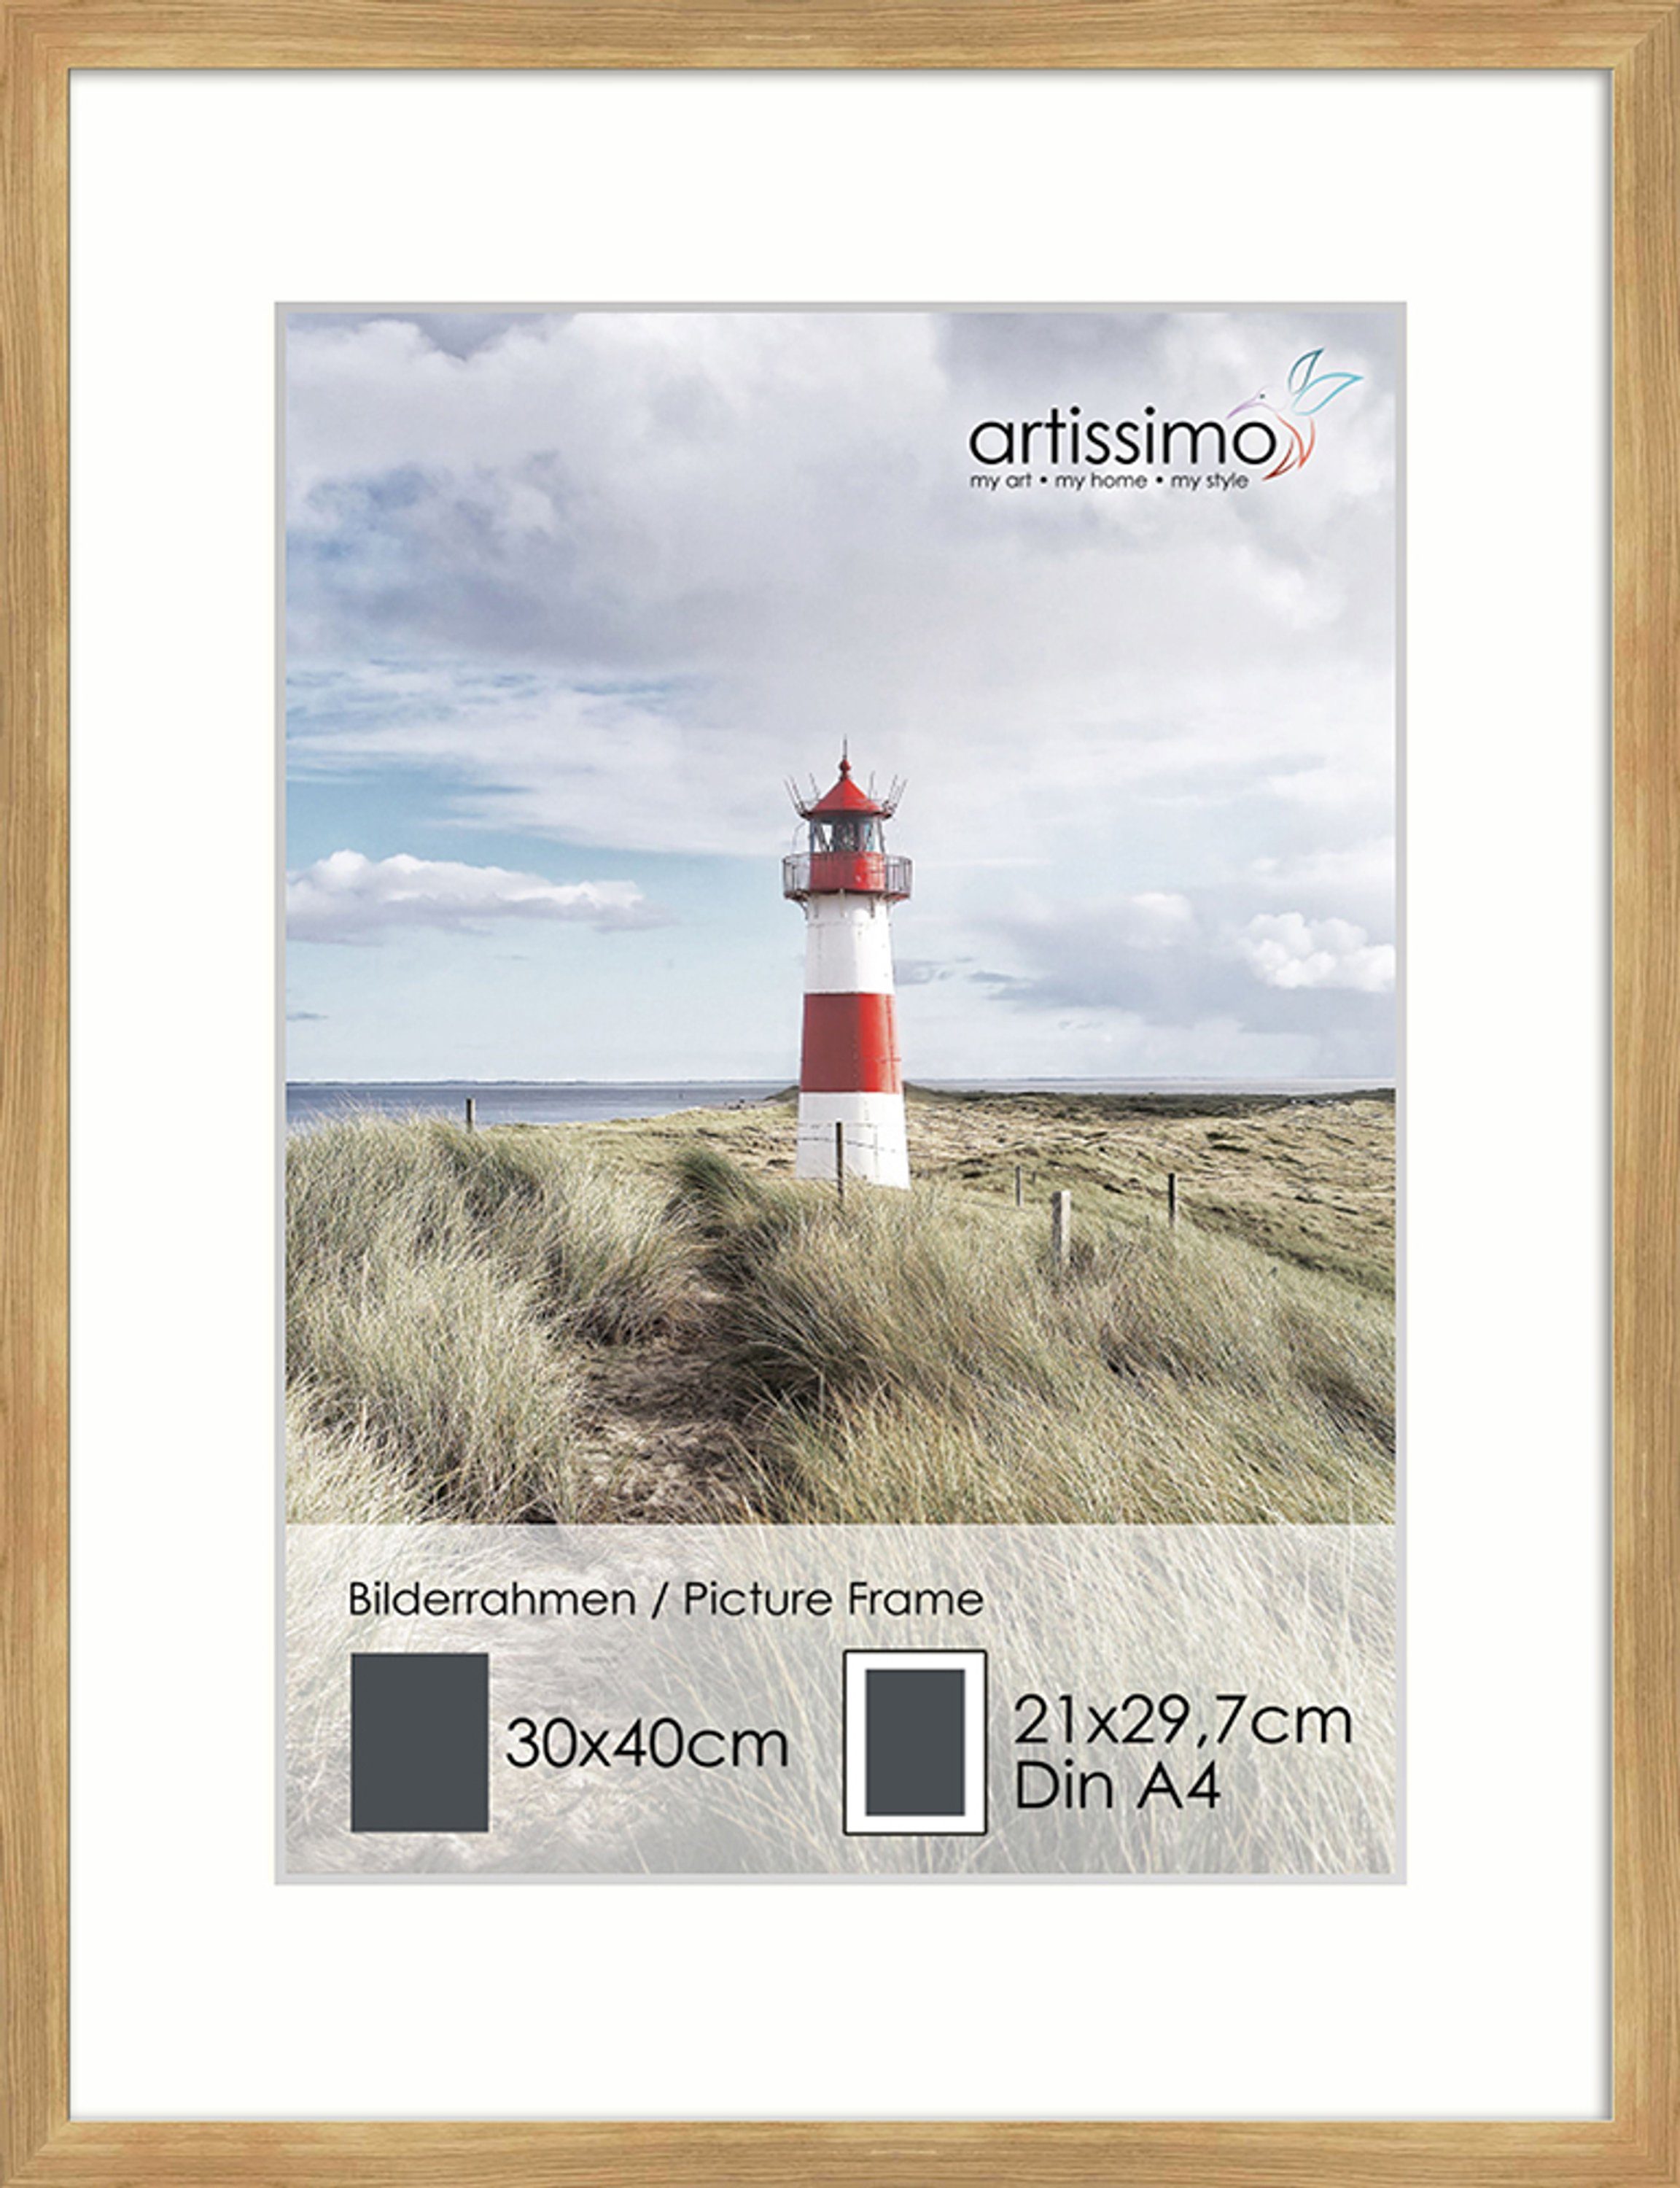 Bilderleiste für Poster Passepartout artissimo Holz inkl. DinA4 Bilder-Rahmen Eiche 30x40cm